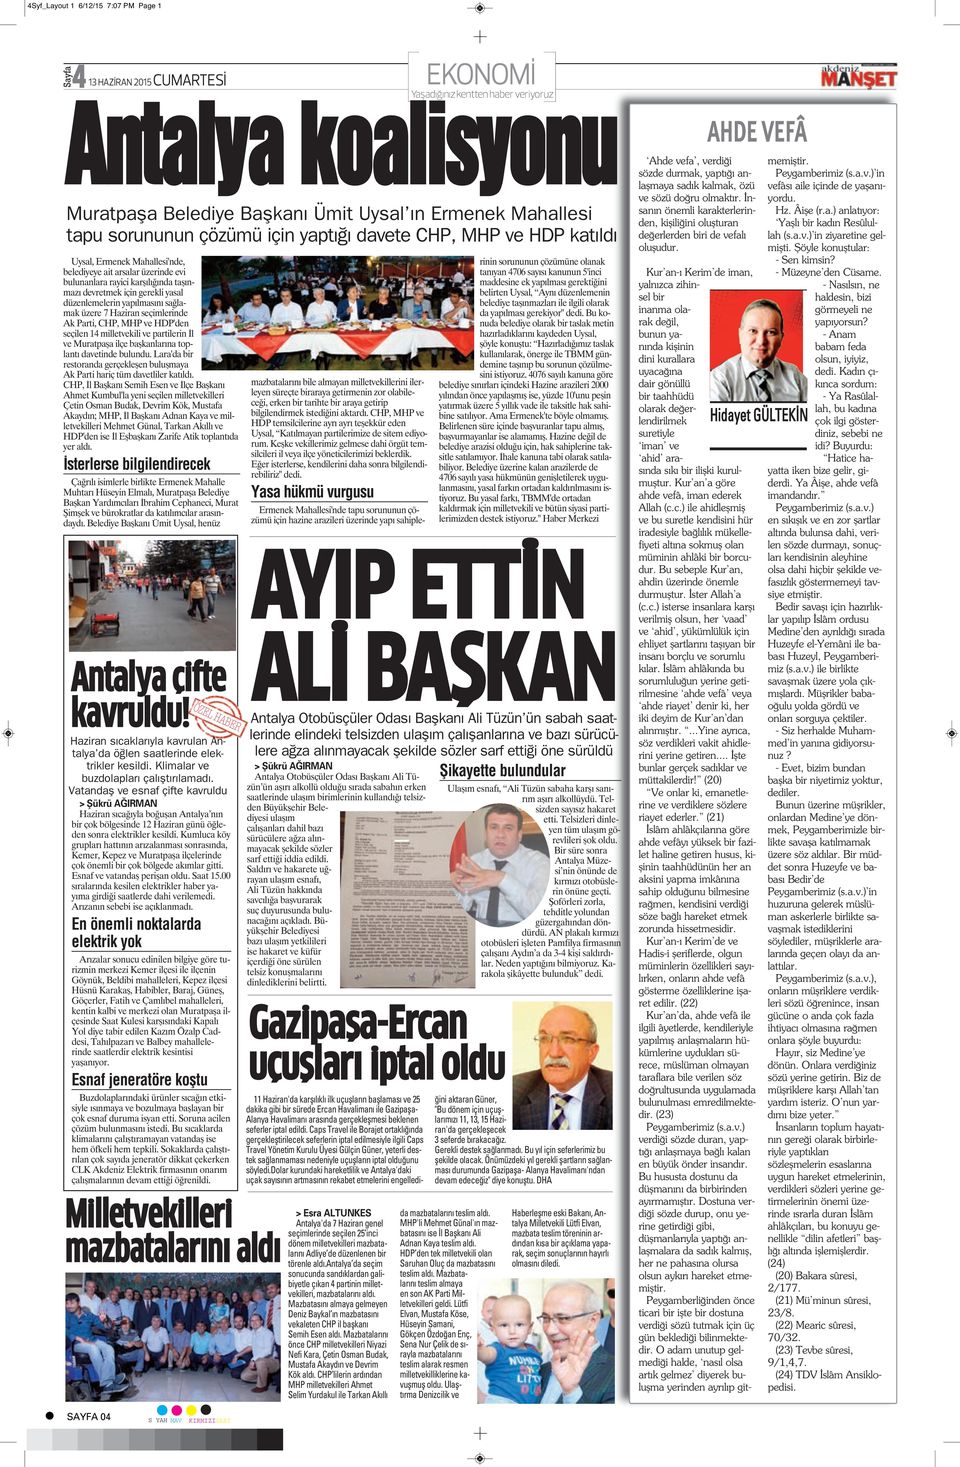 düzenlemelerin yapılmasını sağlamak üzere 7 Haziran seçimlerinde Ak Parti, CHP, MHP ve HDP'den seçilen 14 milletvekili ve partilerin İl ve Muratpaşa ilçe başkanlarına toplantı davetinde bulundu.